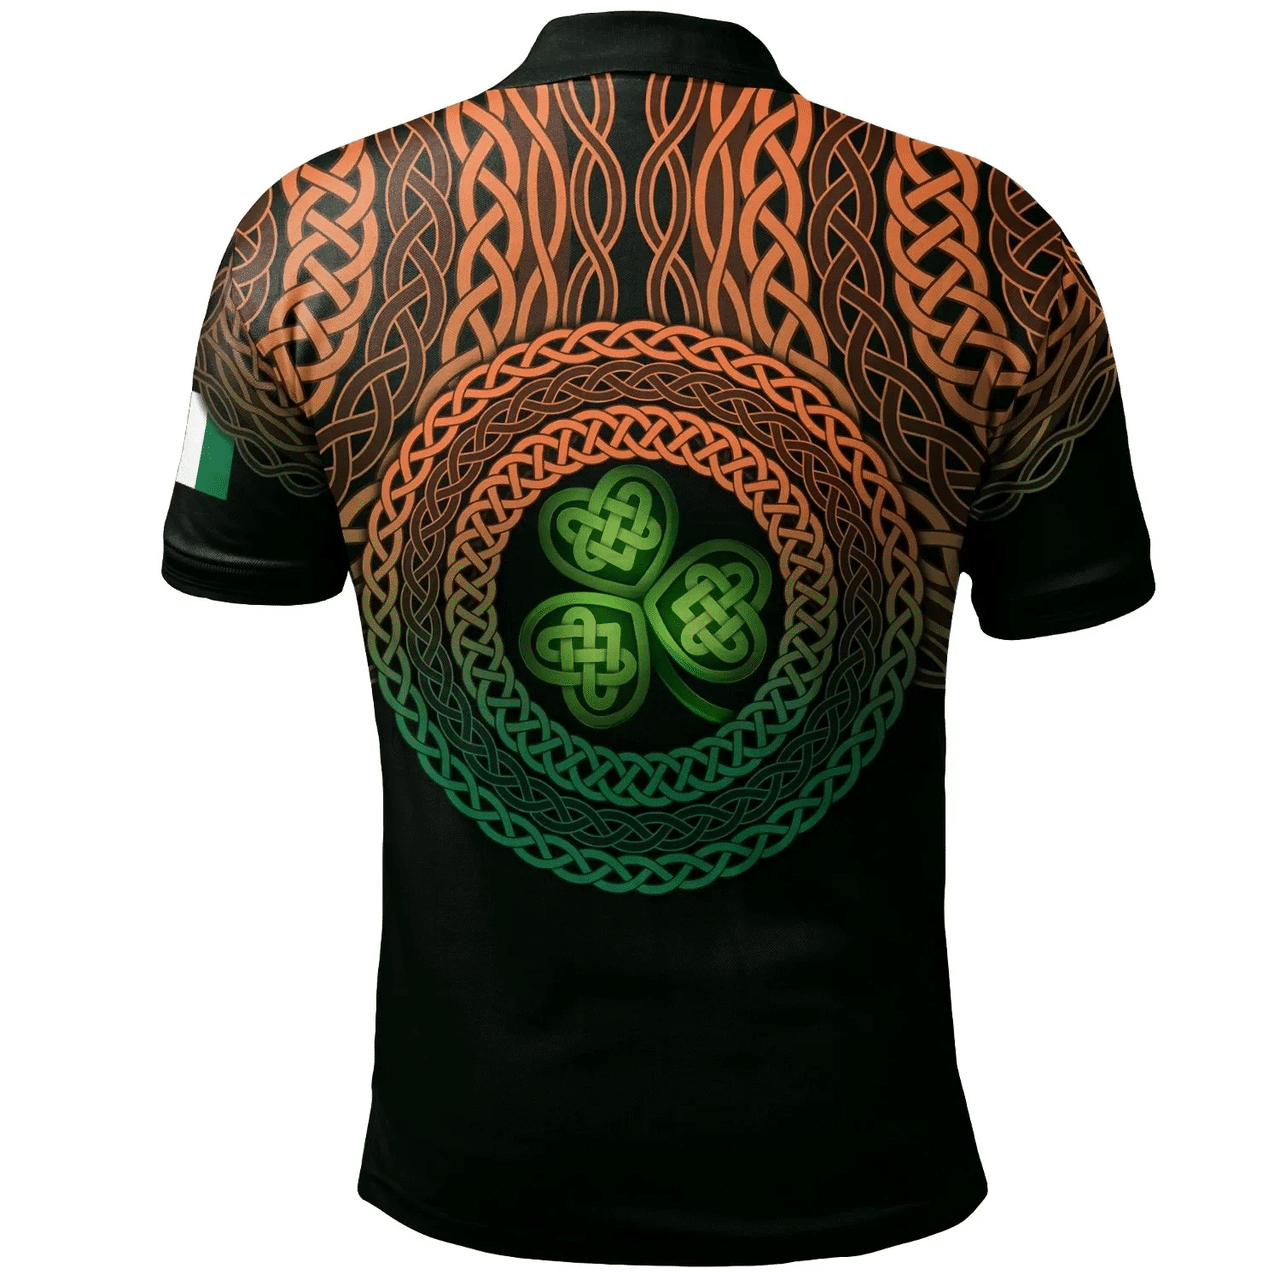 1stIreland Ireland Polo Shirt - Piers Irish Family Crest Polo Shirt - Celtic Pride A7 | 1stIreland.com